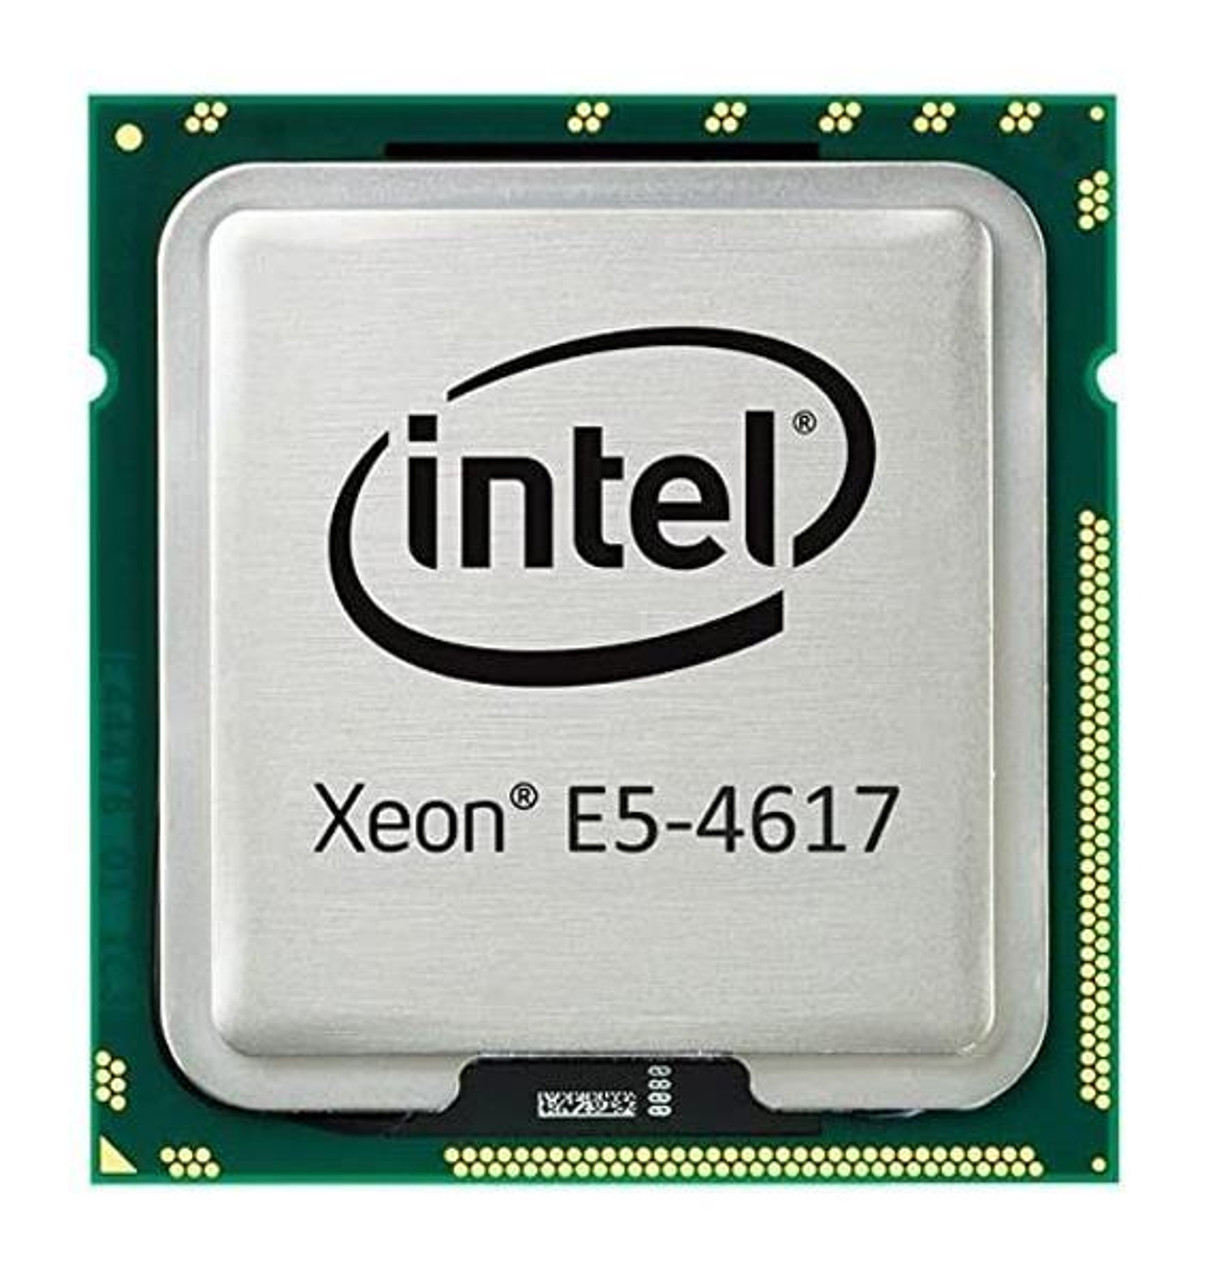 Lenovo 2.90GHz 7.20GT/s QPI 15MB L3 Cache Intel Xeon E5-4617 6-Core Processor Upgrade